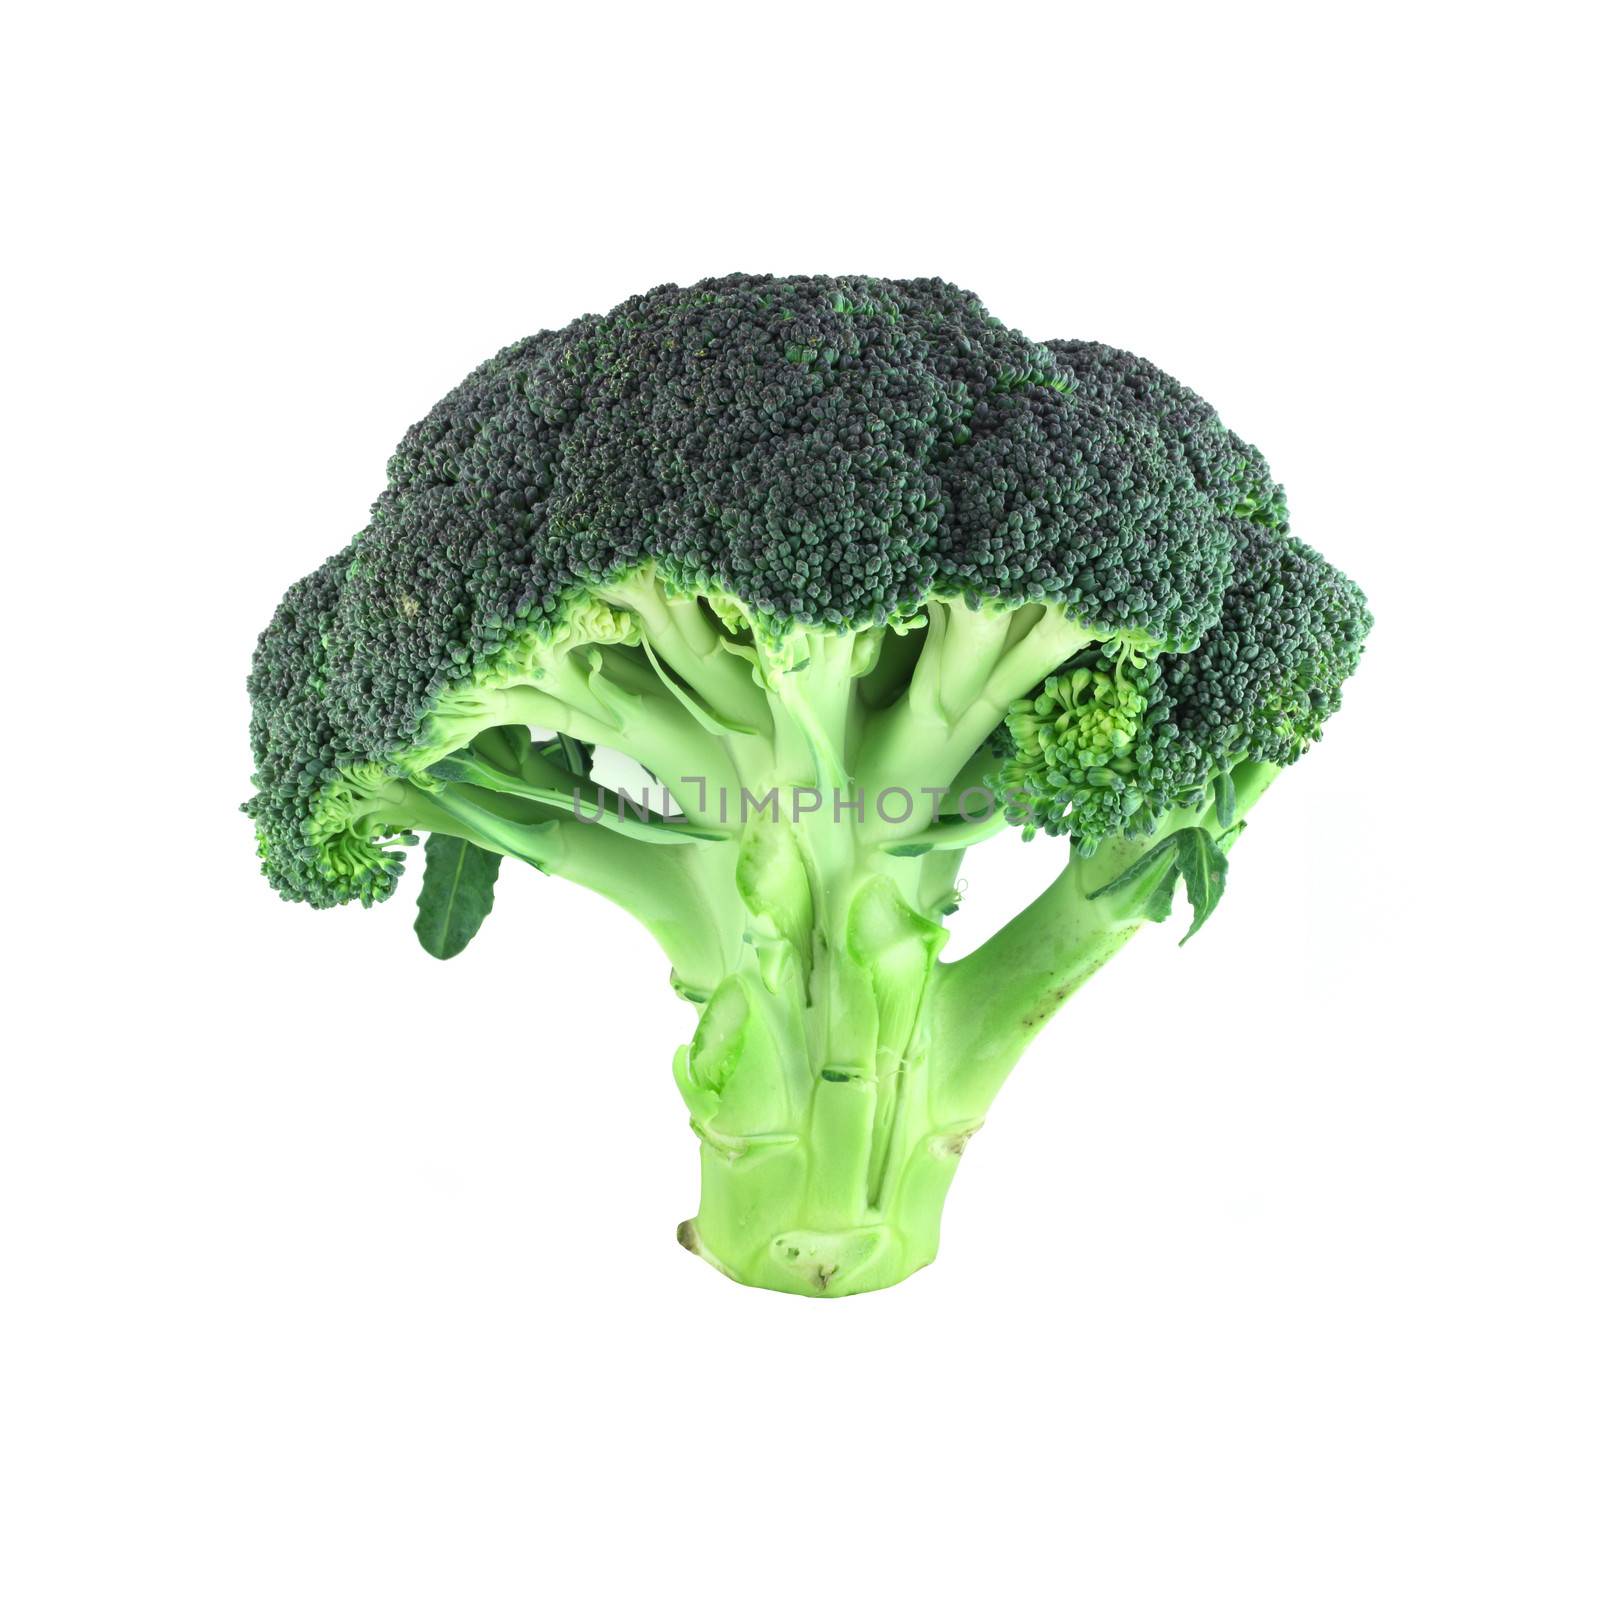 Broccoli on white by destillat